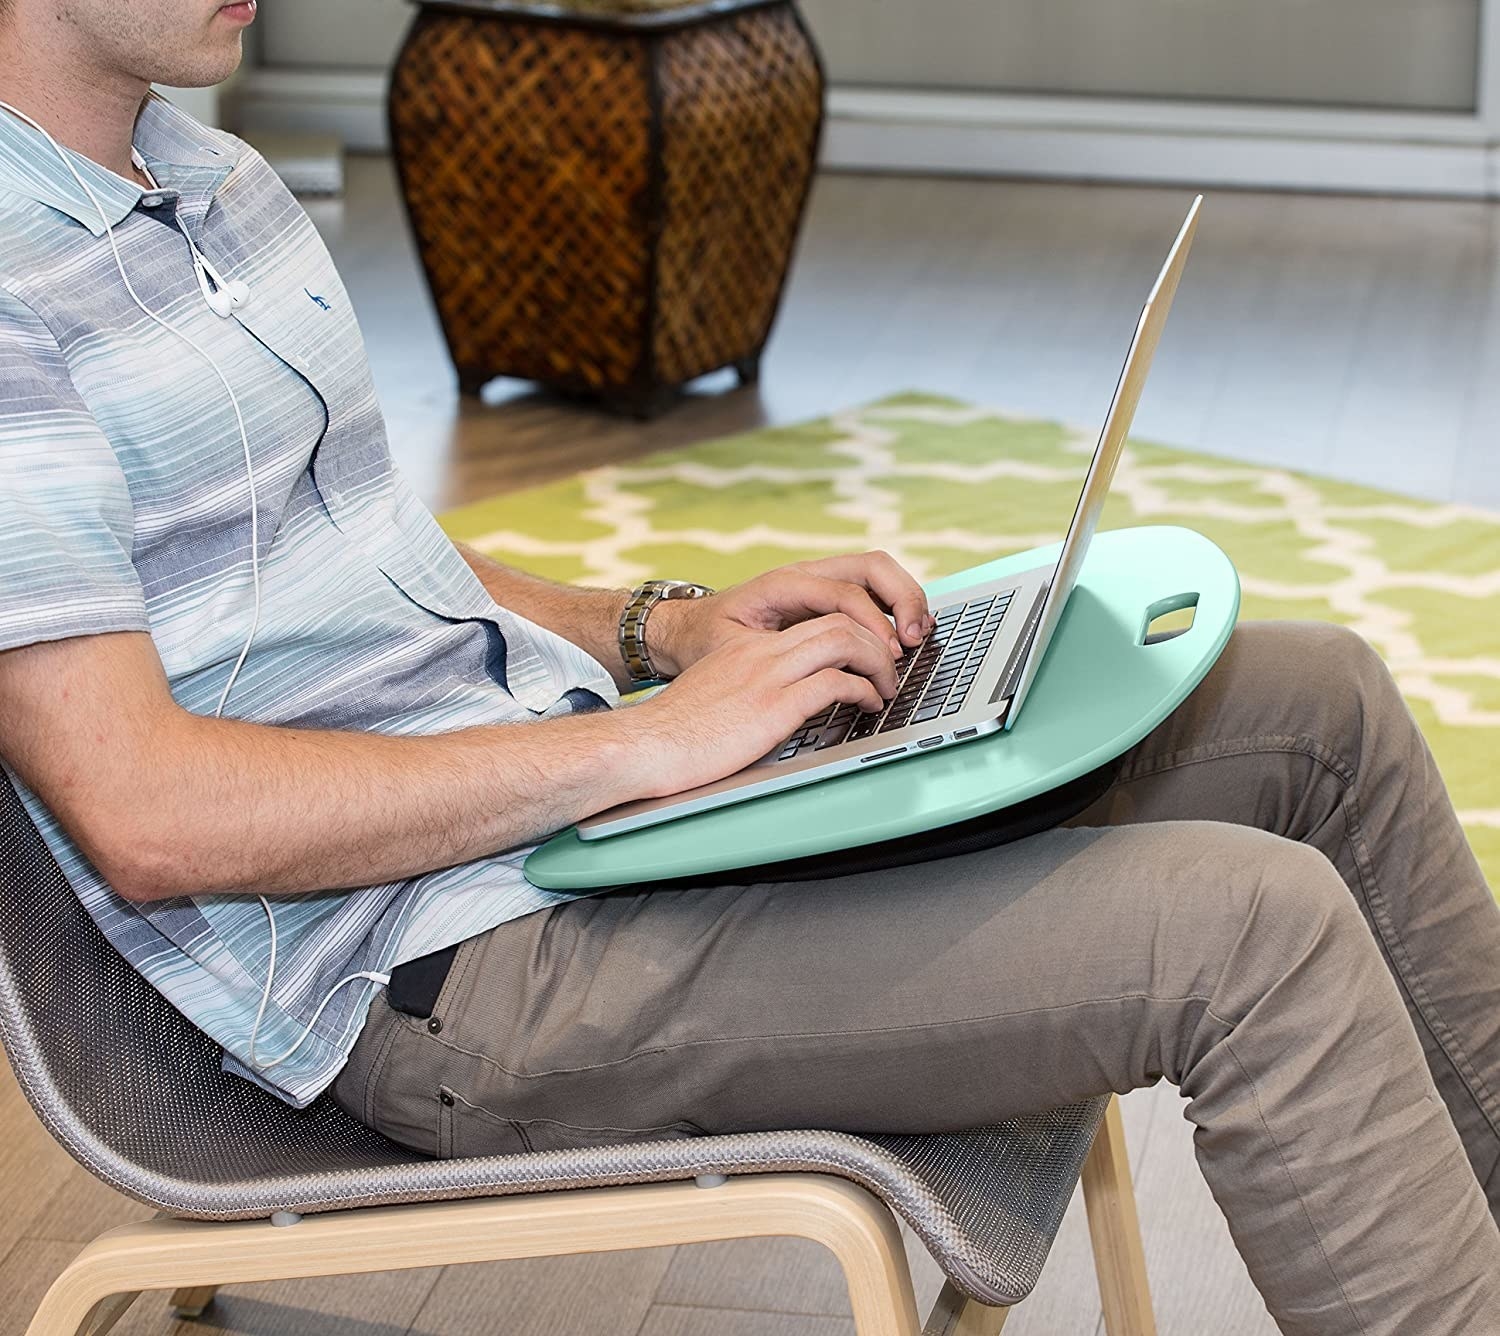 DIY Lap desk with old pillow, DIY laptop lap desk, How to make a Lap  Desk